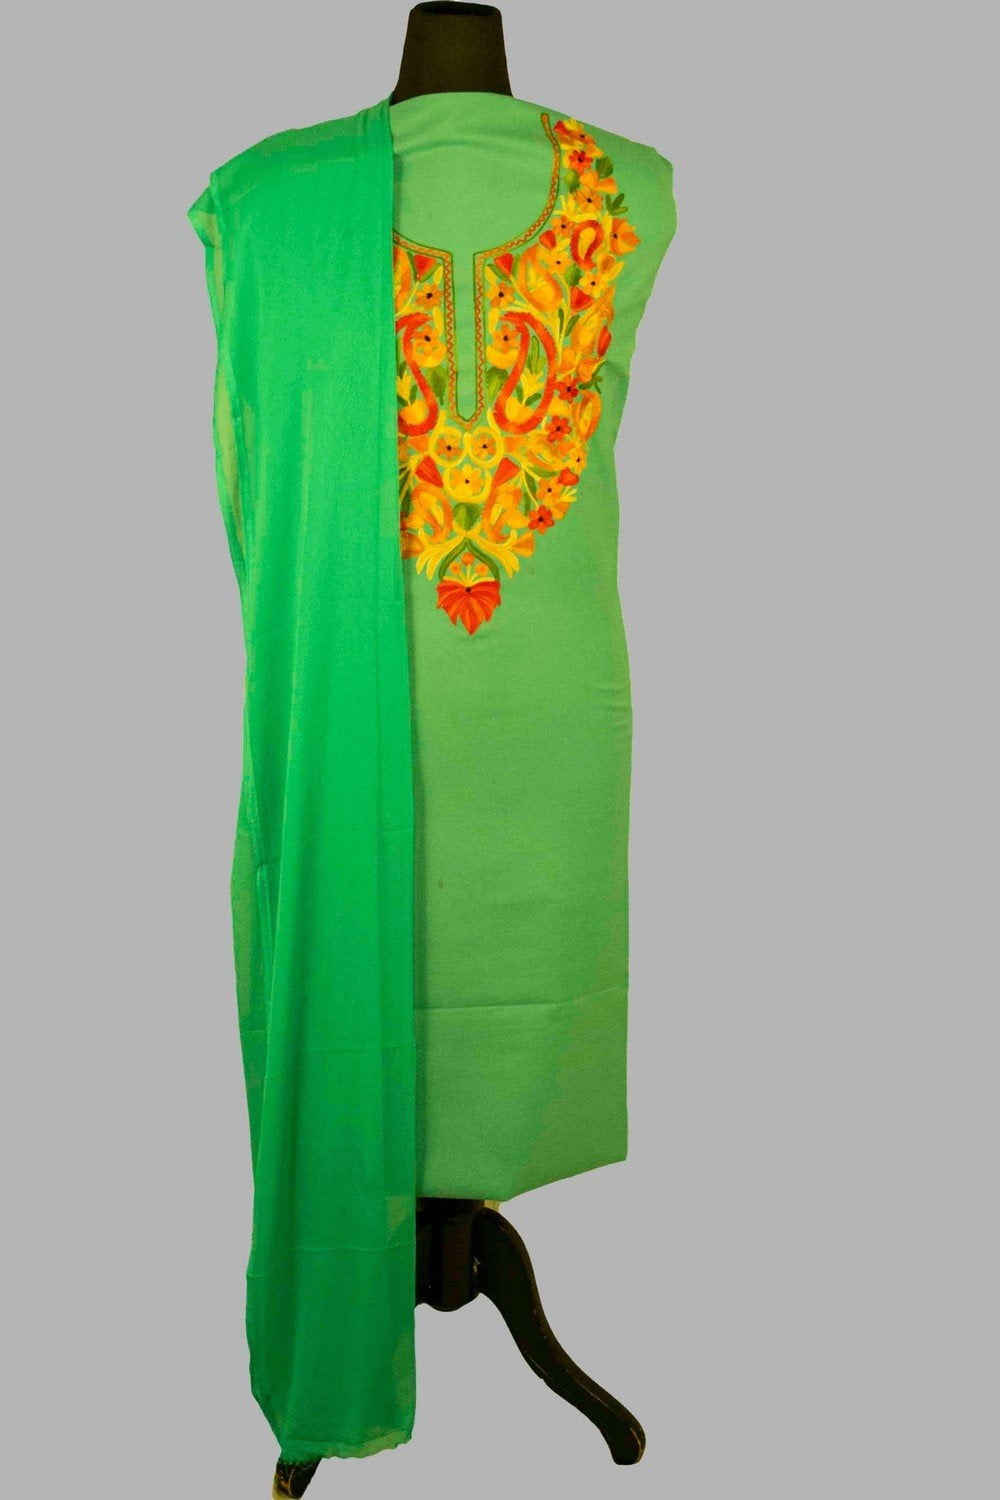 Green Colour Aari Work Salwar Kameez With Blooming Multi